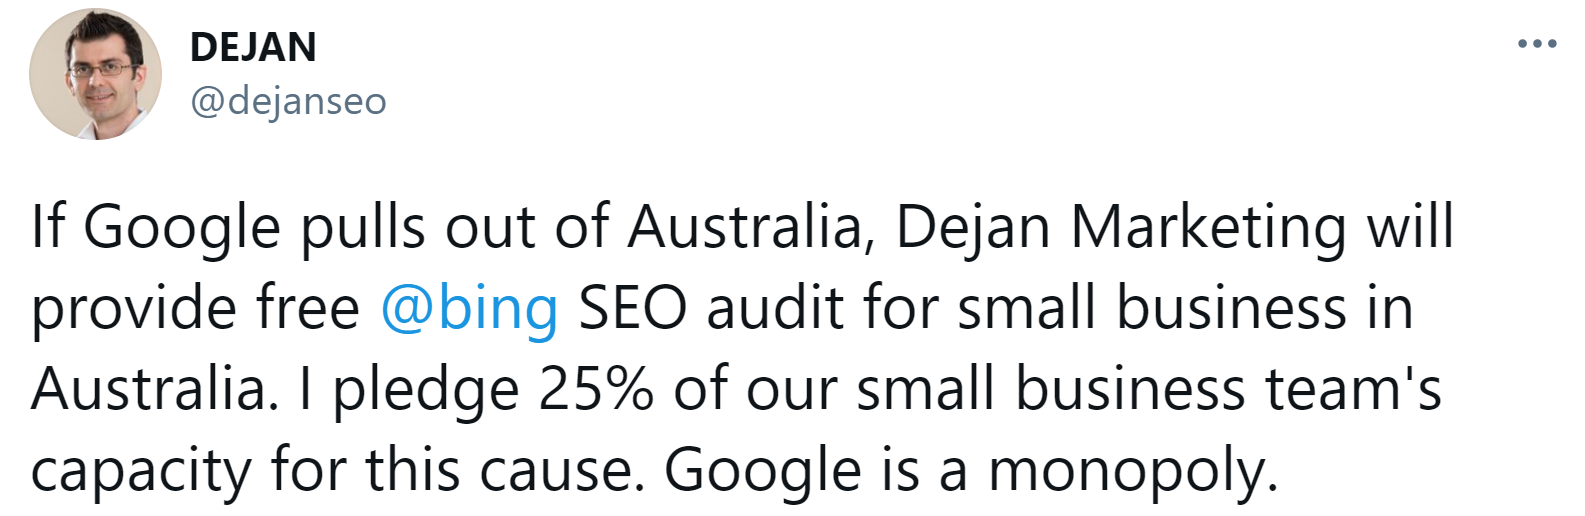 Dejan Petrovic bietet kostenlose Beratung zu Bing an, wenn Google in Australien abgeschaltet wird